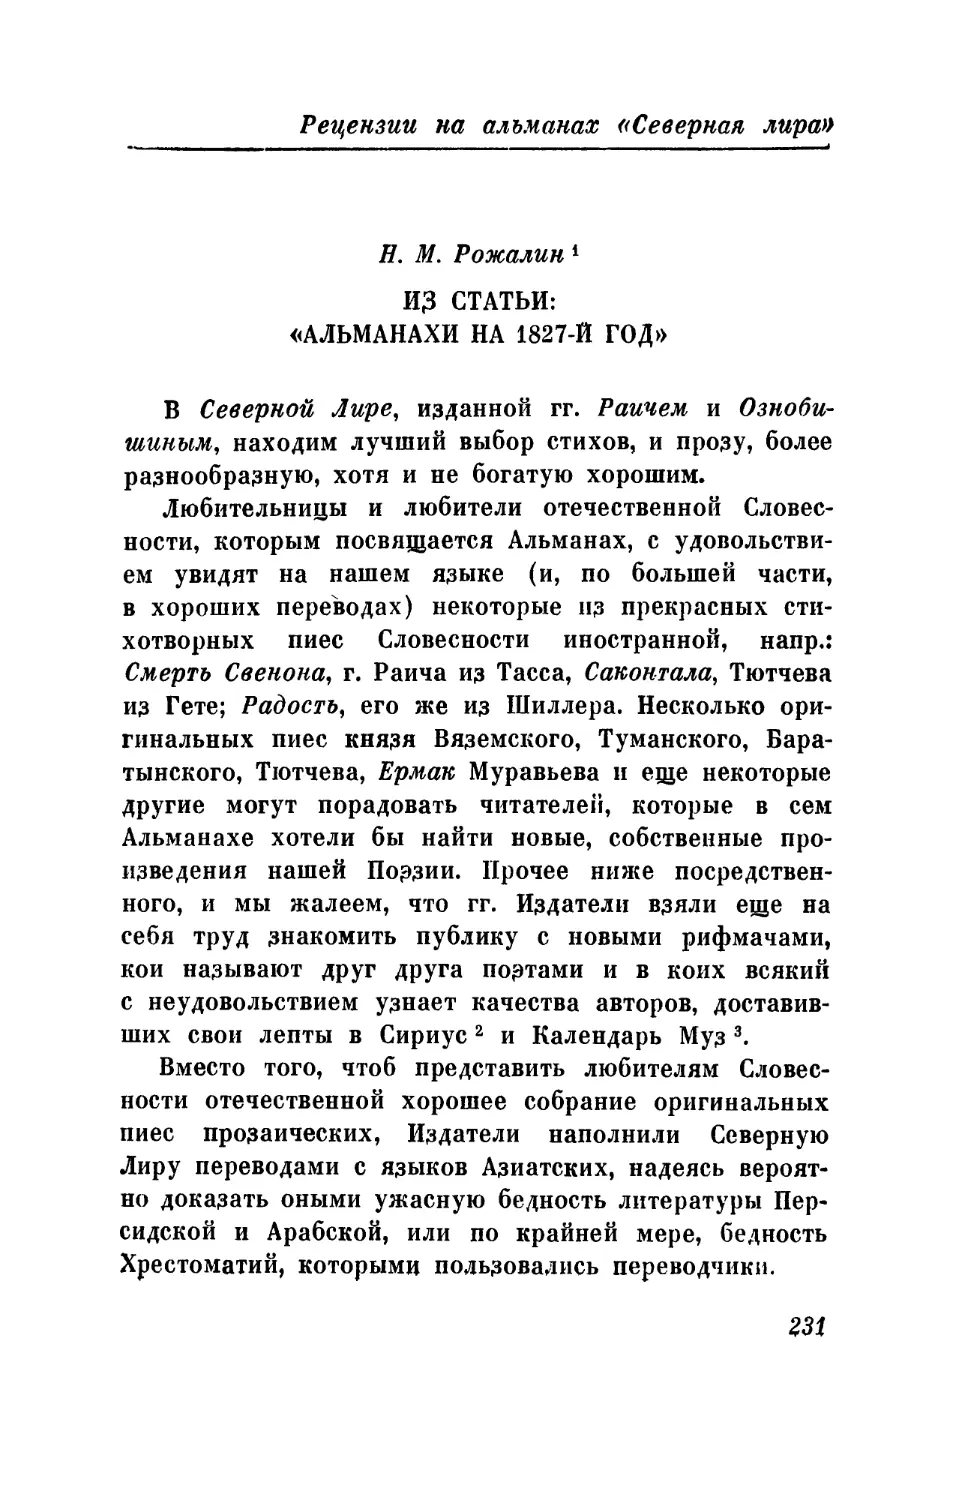 Н. М. Рожалин. Из статьи: Альманахи на 1827 год